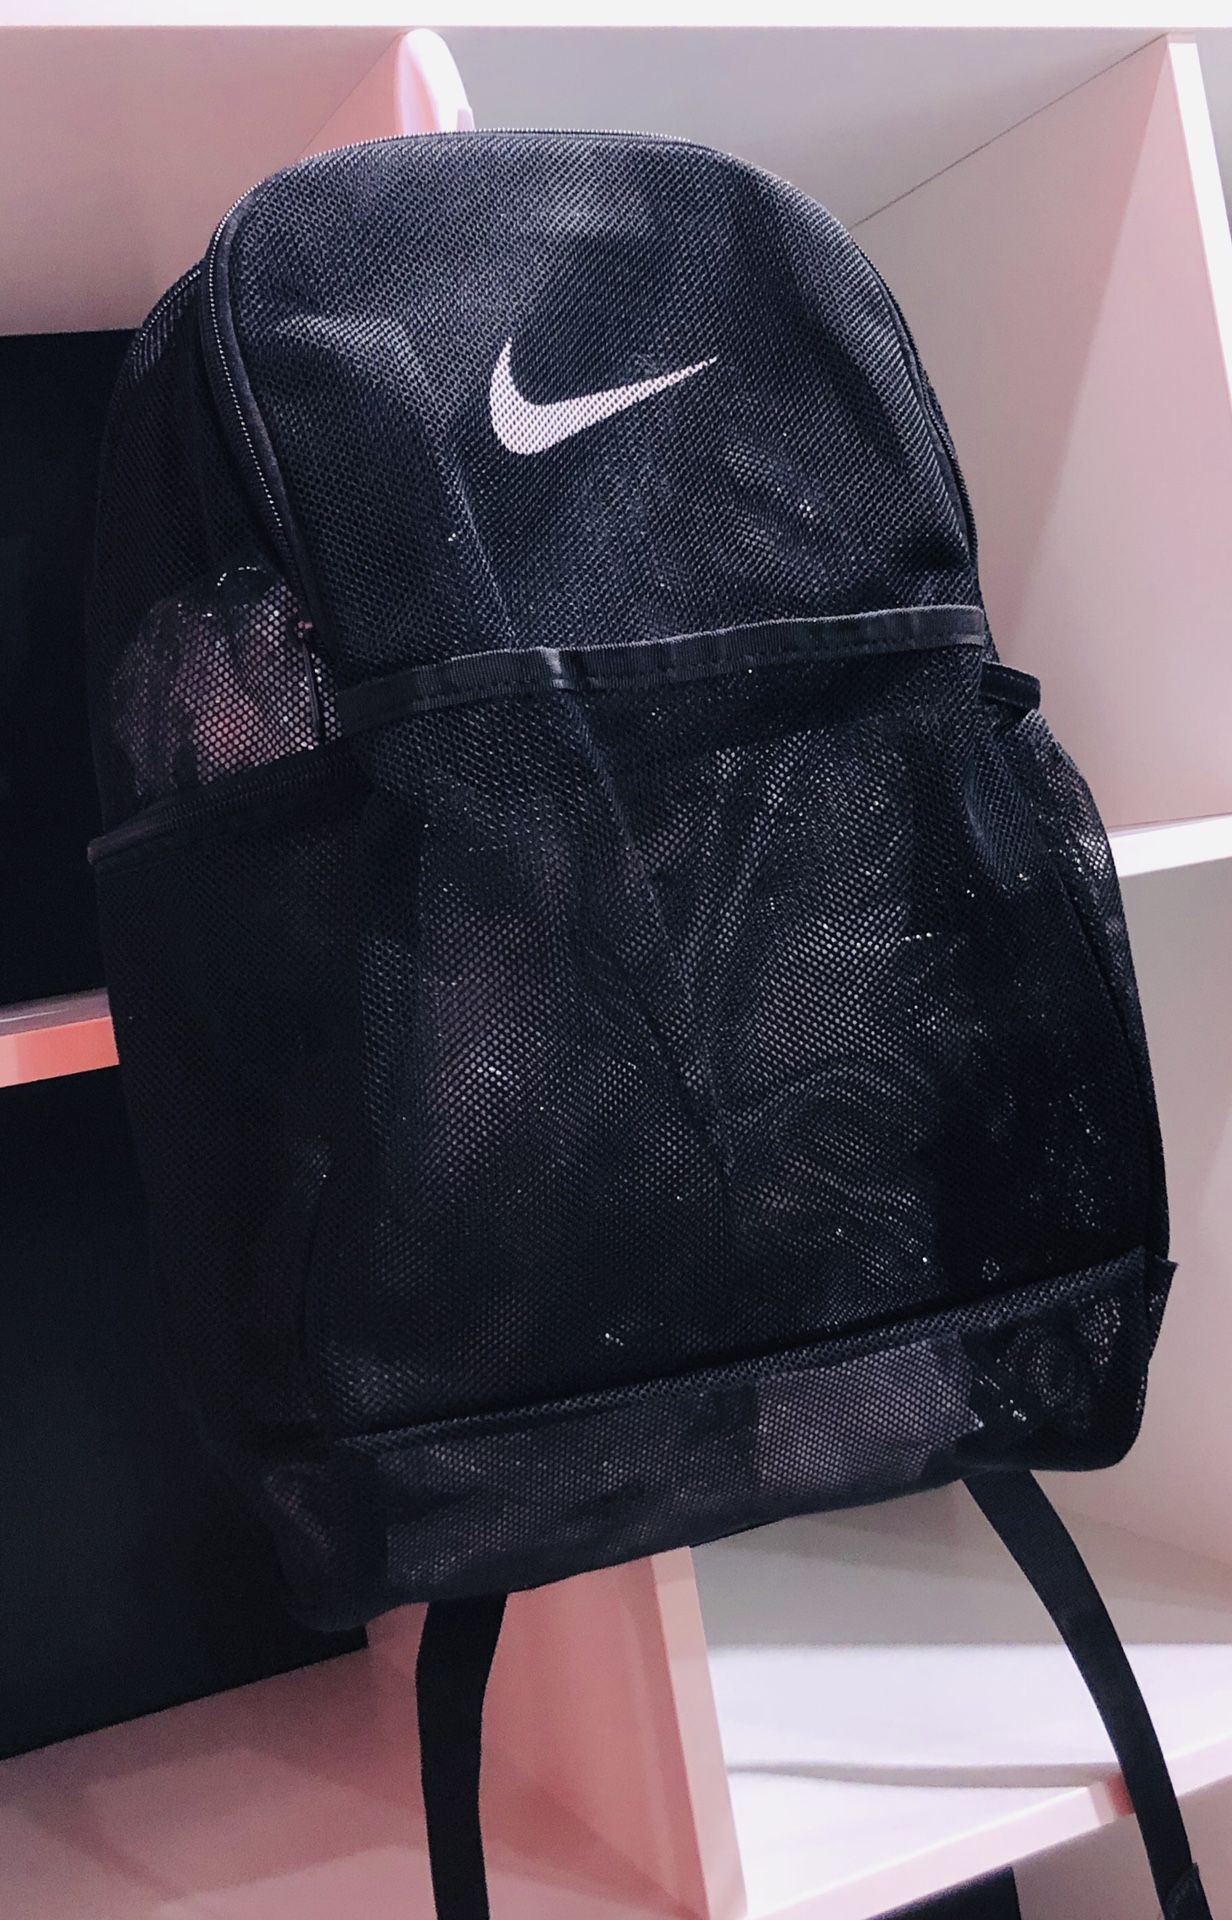 Nike Brasilia Mesh Backpack